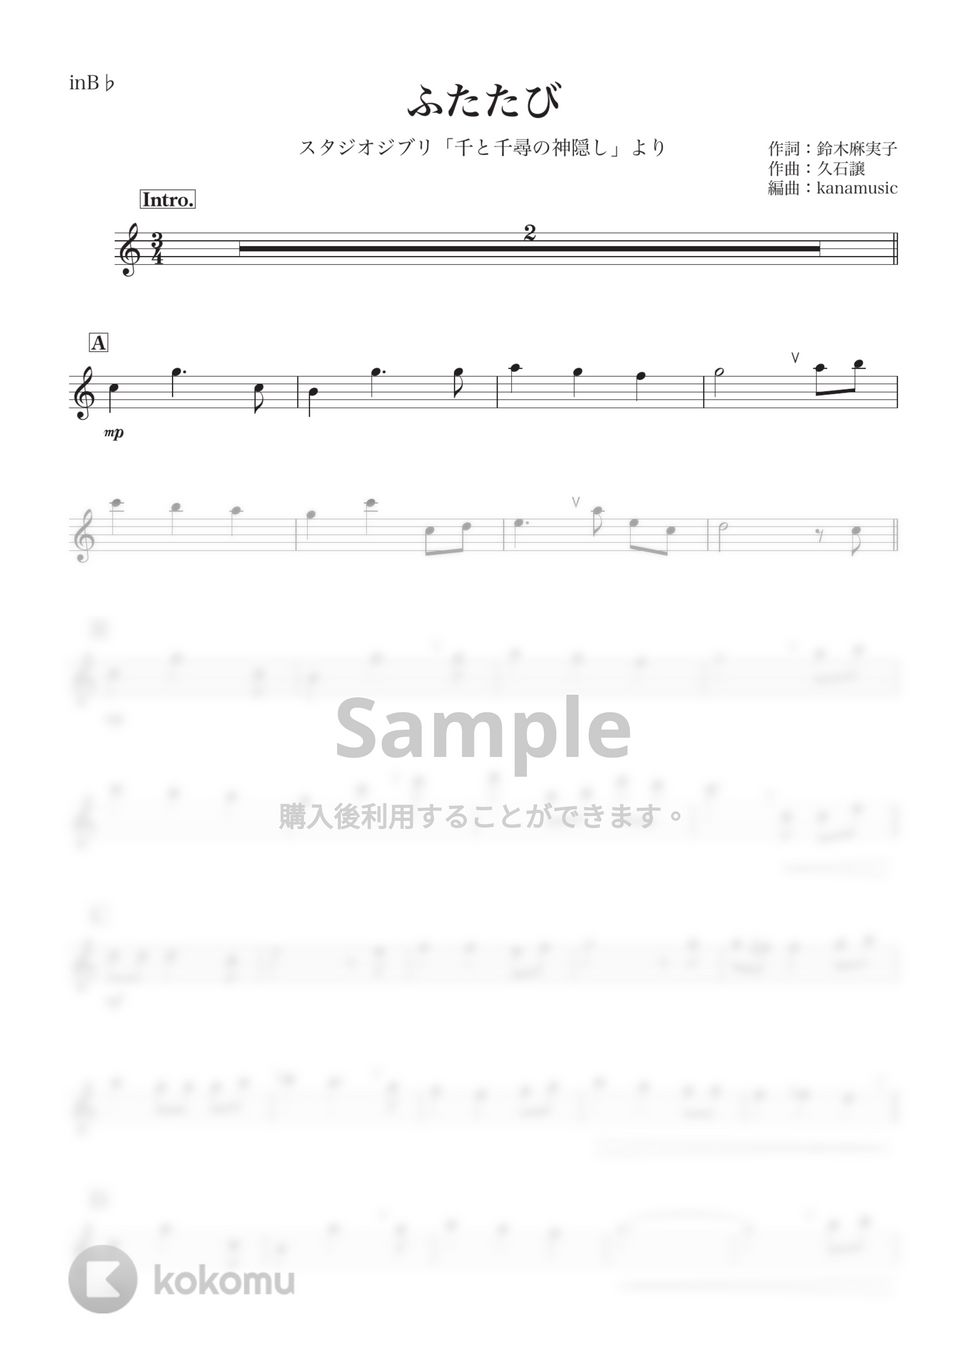 千と千尋の神隠し - ふたたび (B♭) by kanamusic